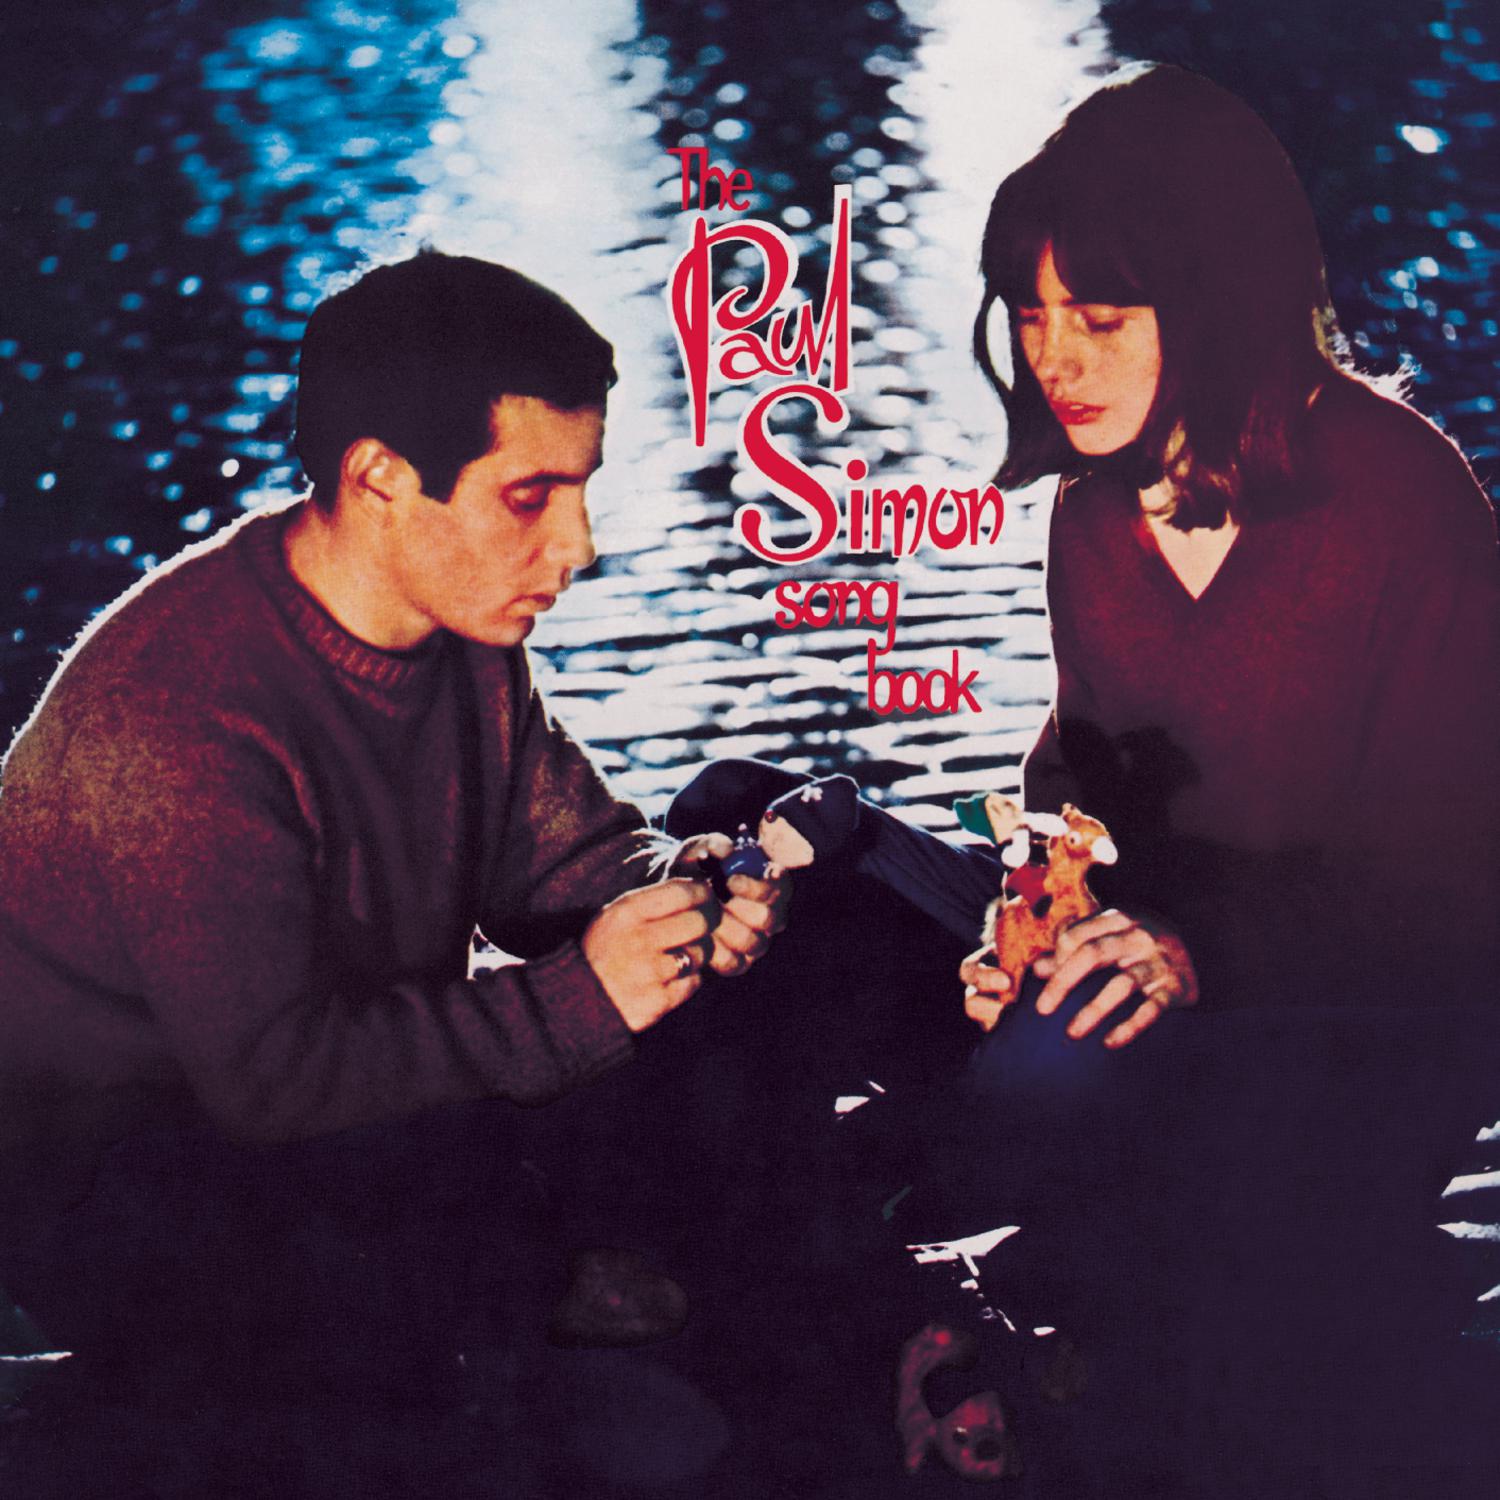 Paul Simon - The Paul Simon Songbook (1965/2004) [AcousticSounds FLAC 24bit/44,1kHz]